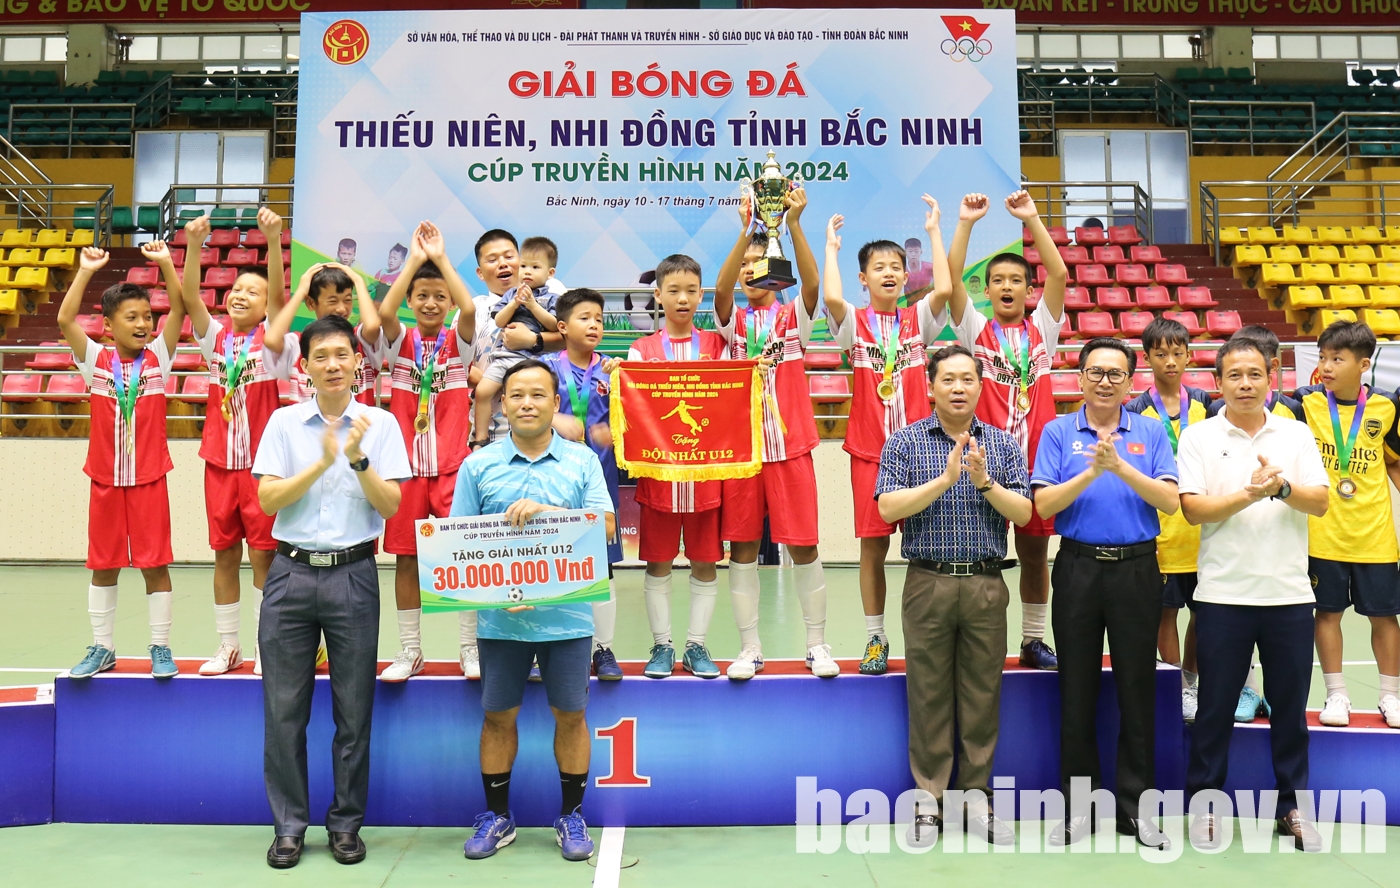 Bế mạc Giải Bóng đá Thiếu niên, Nhi đồng tỉnh Bắc Ninh Cúp Truyền hình năm 2024